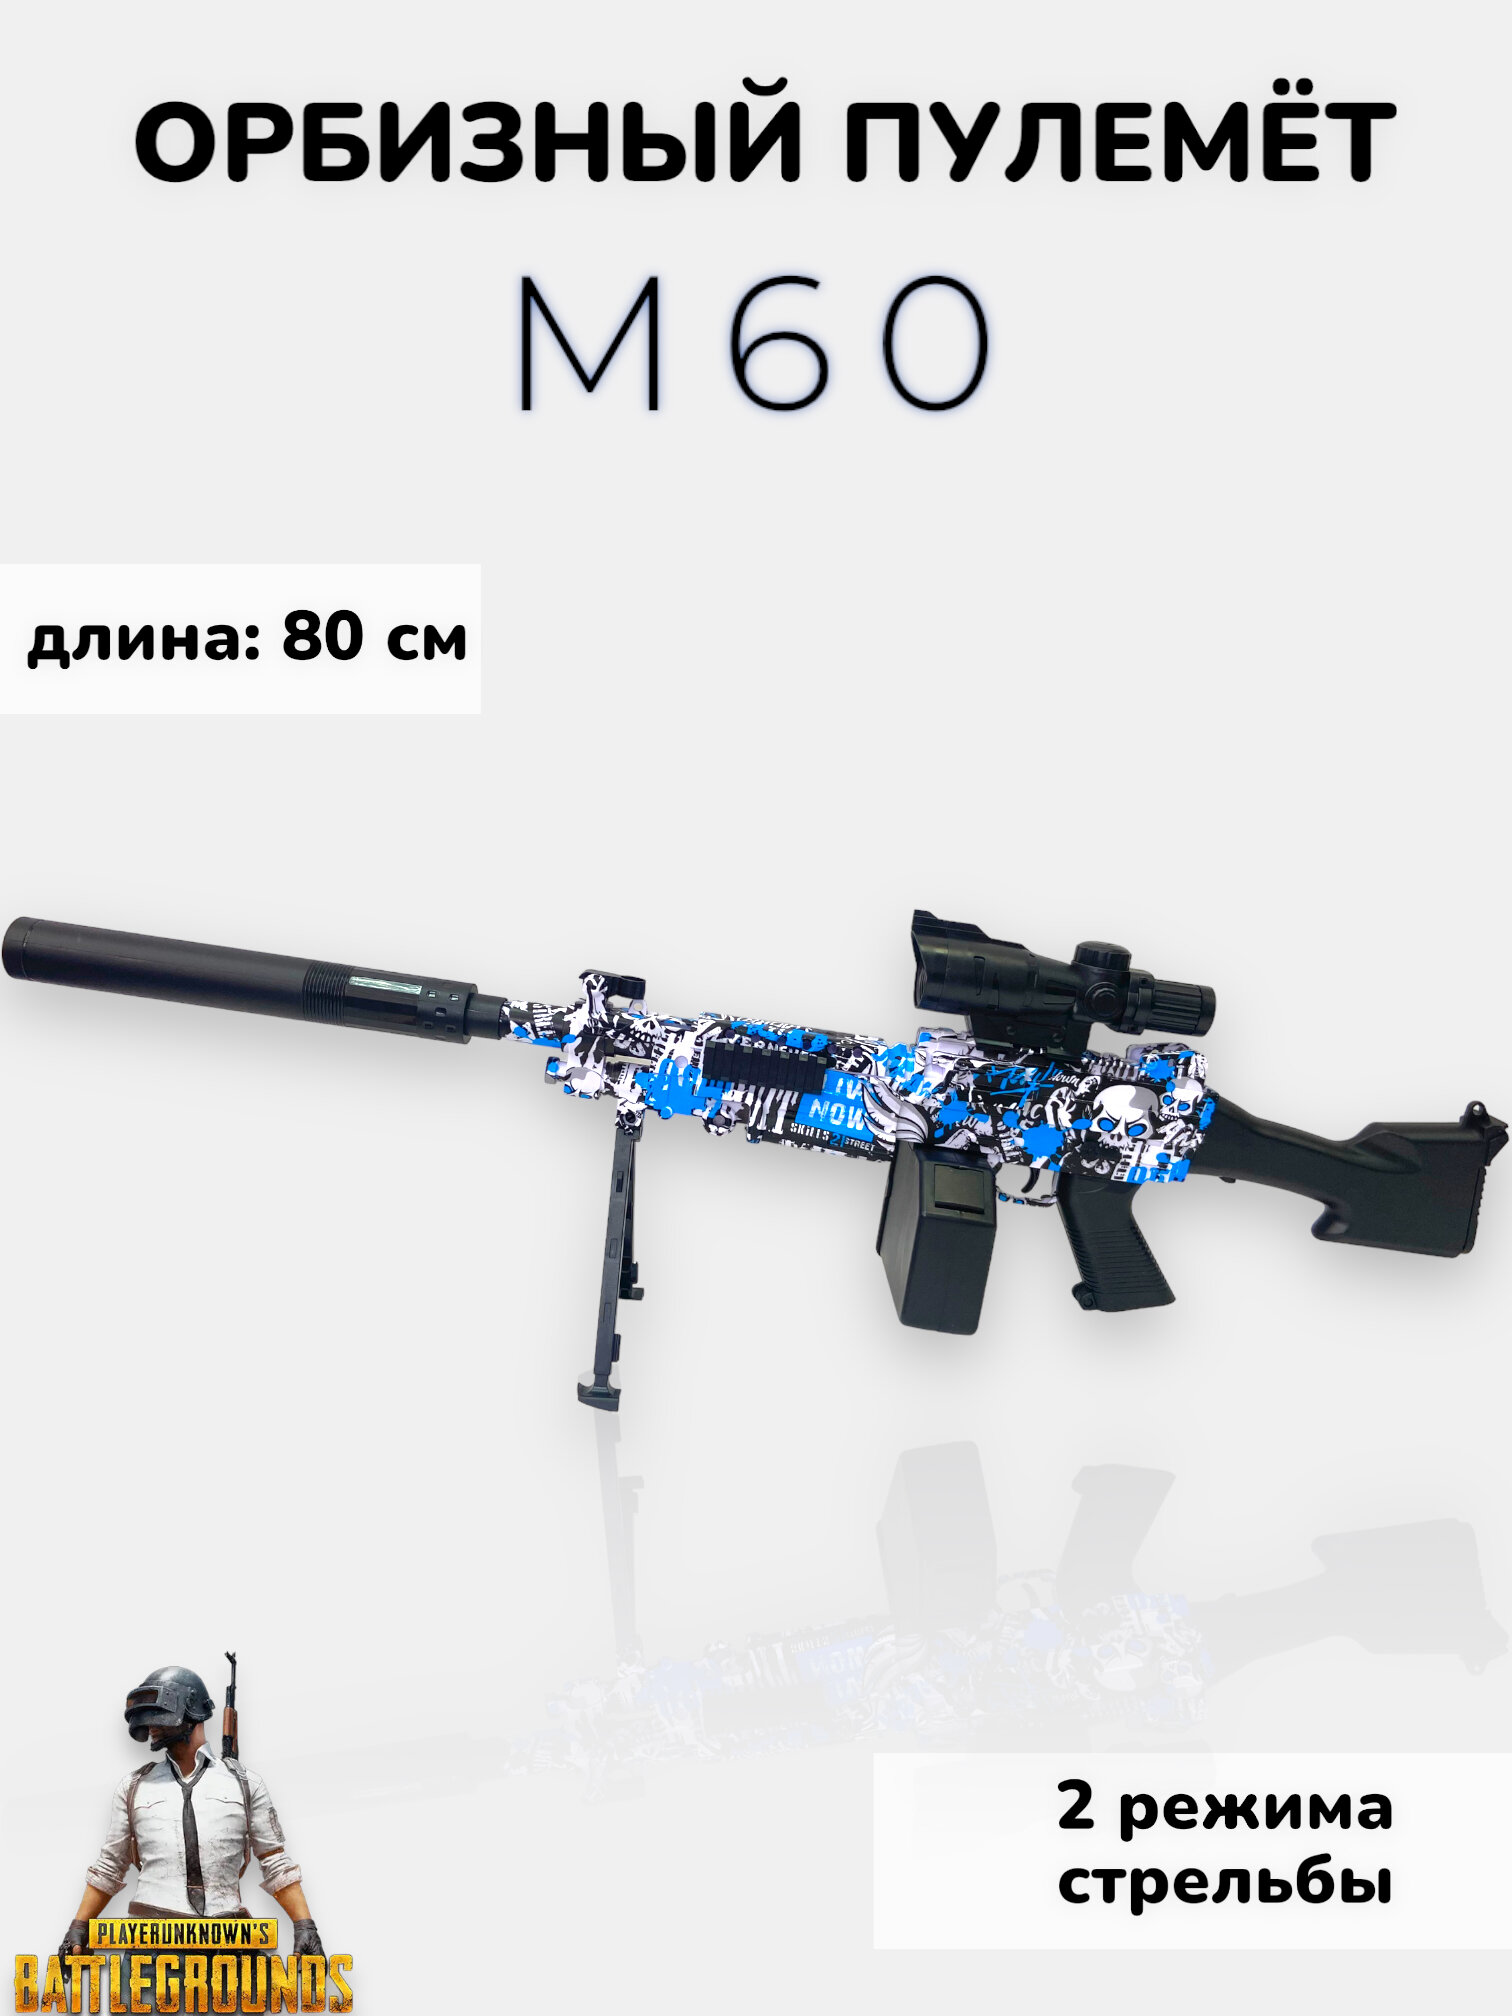 Орбизный пулемёт М60